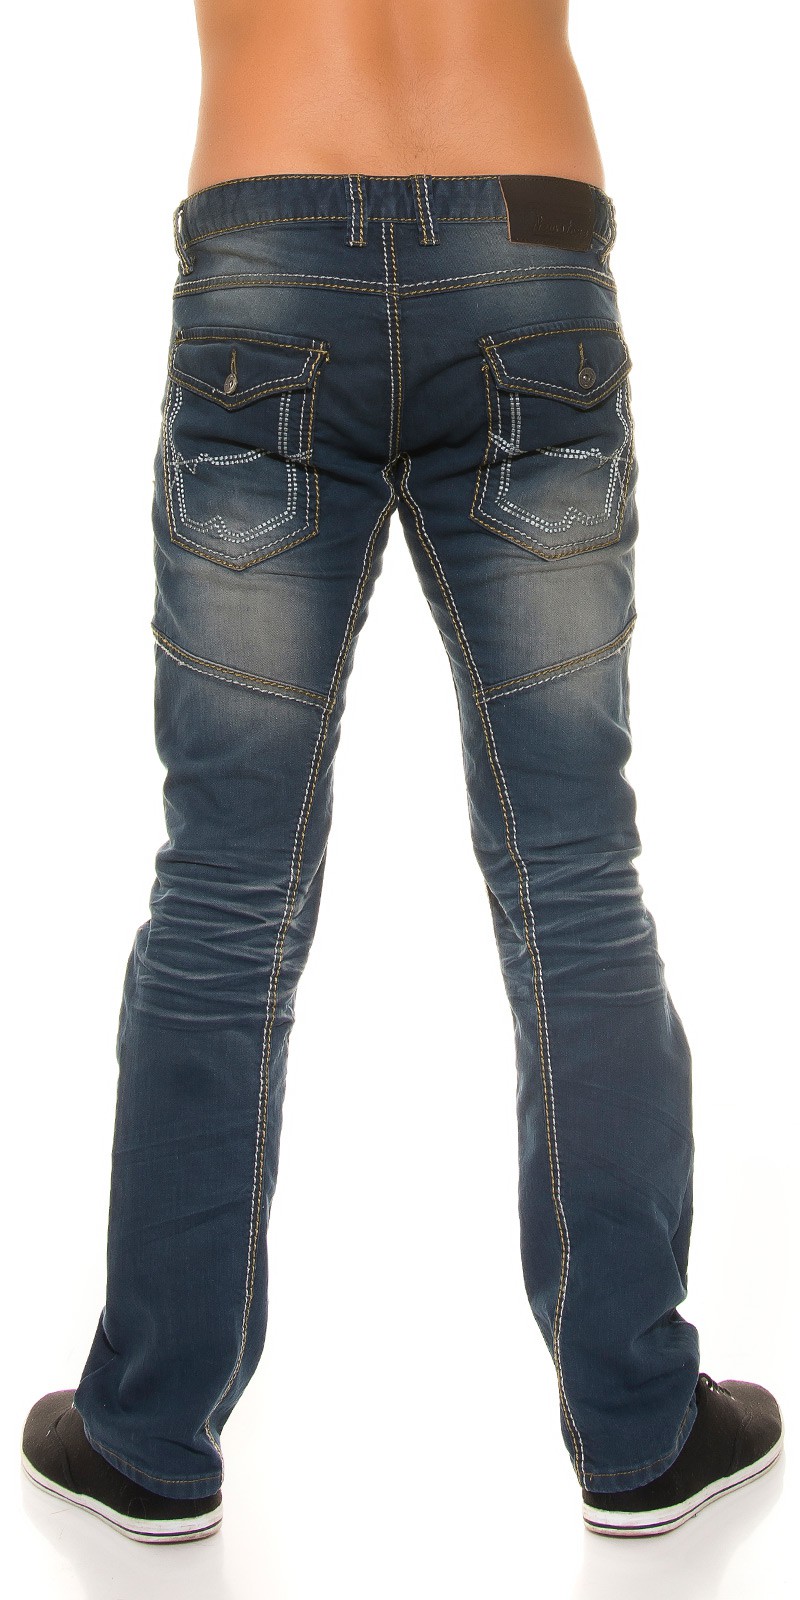 Jeans - Homem 1